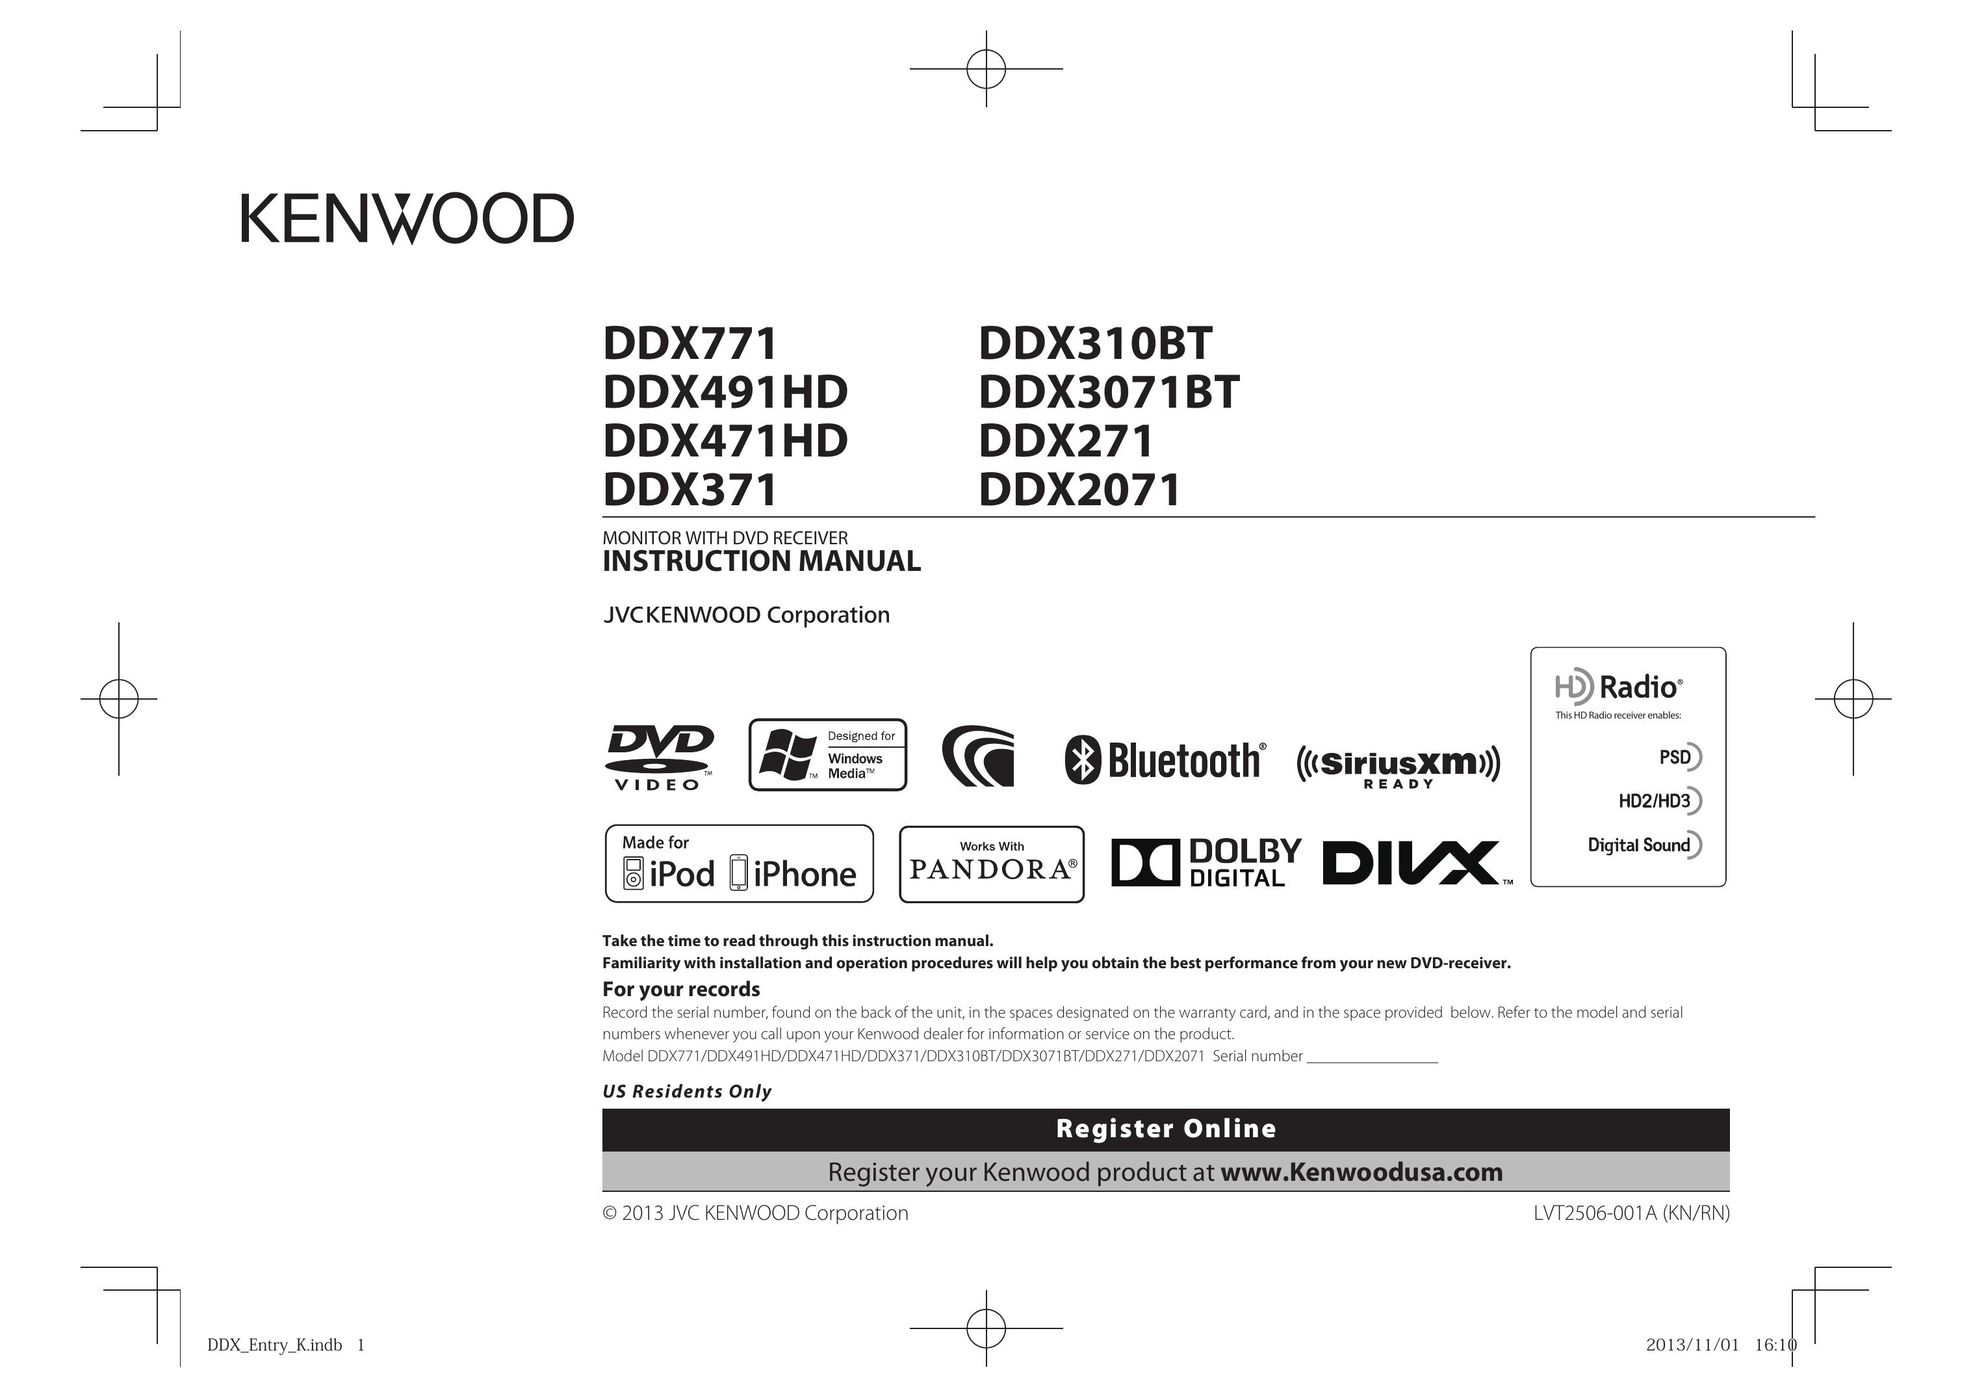 Kenwood DDX3071BT Car Video System User Manual